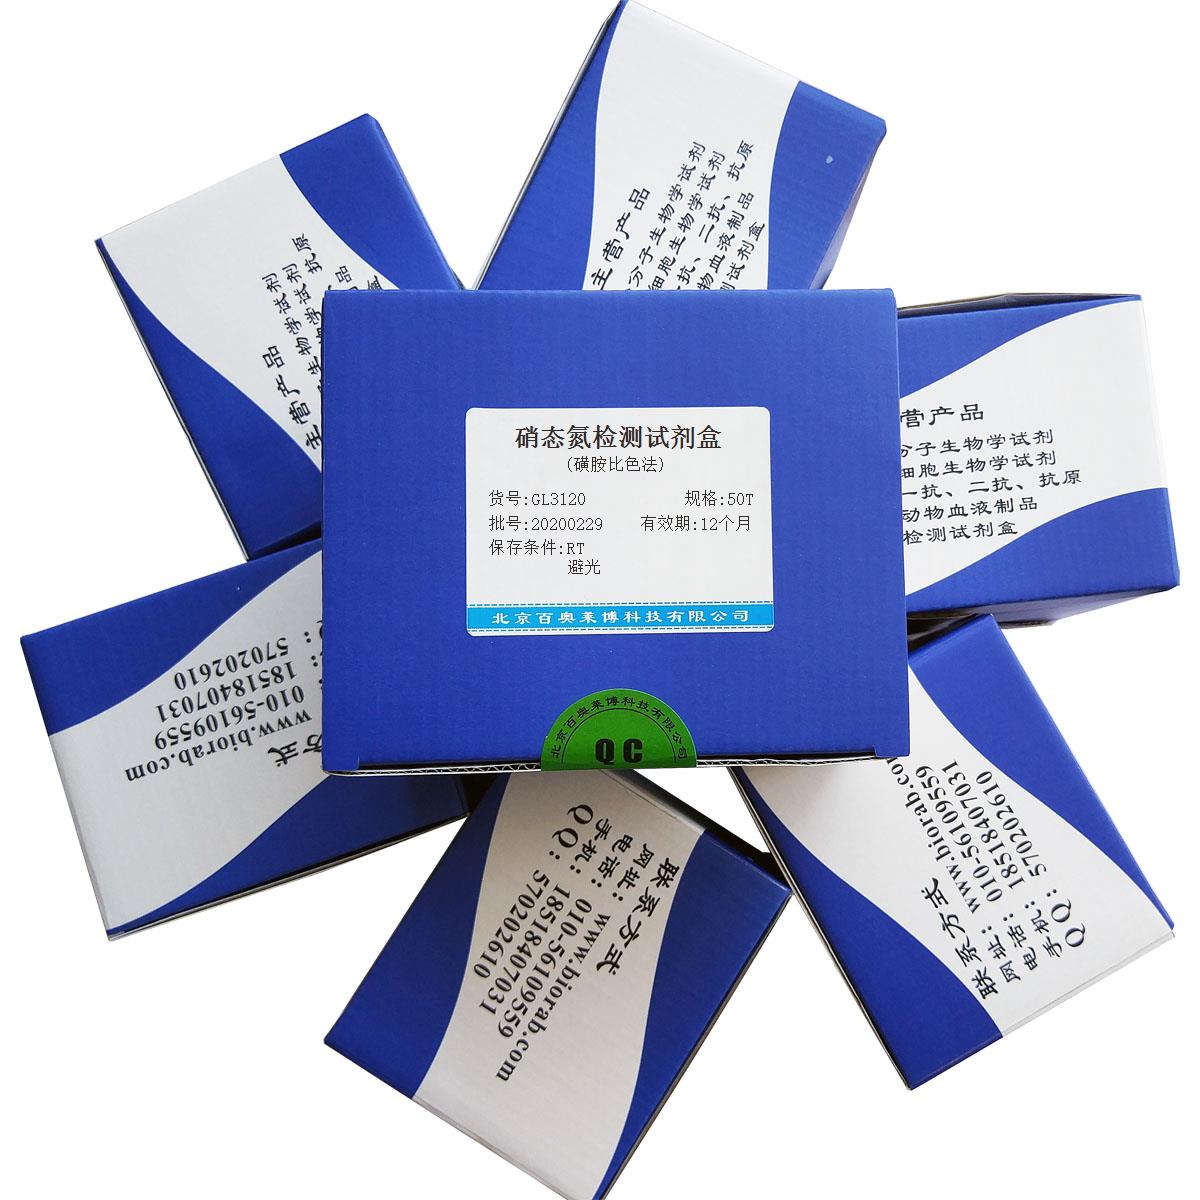 硝态氮检测试剂盒(磺胺比色法)北京供应商